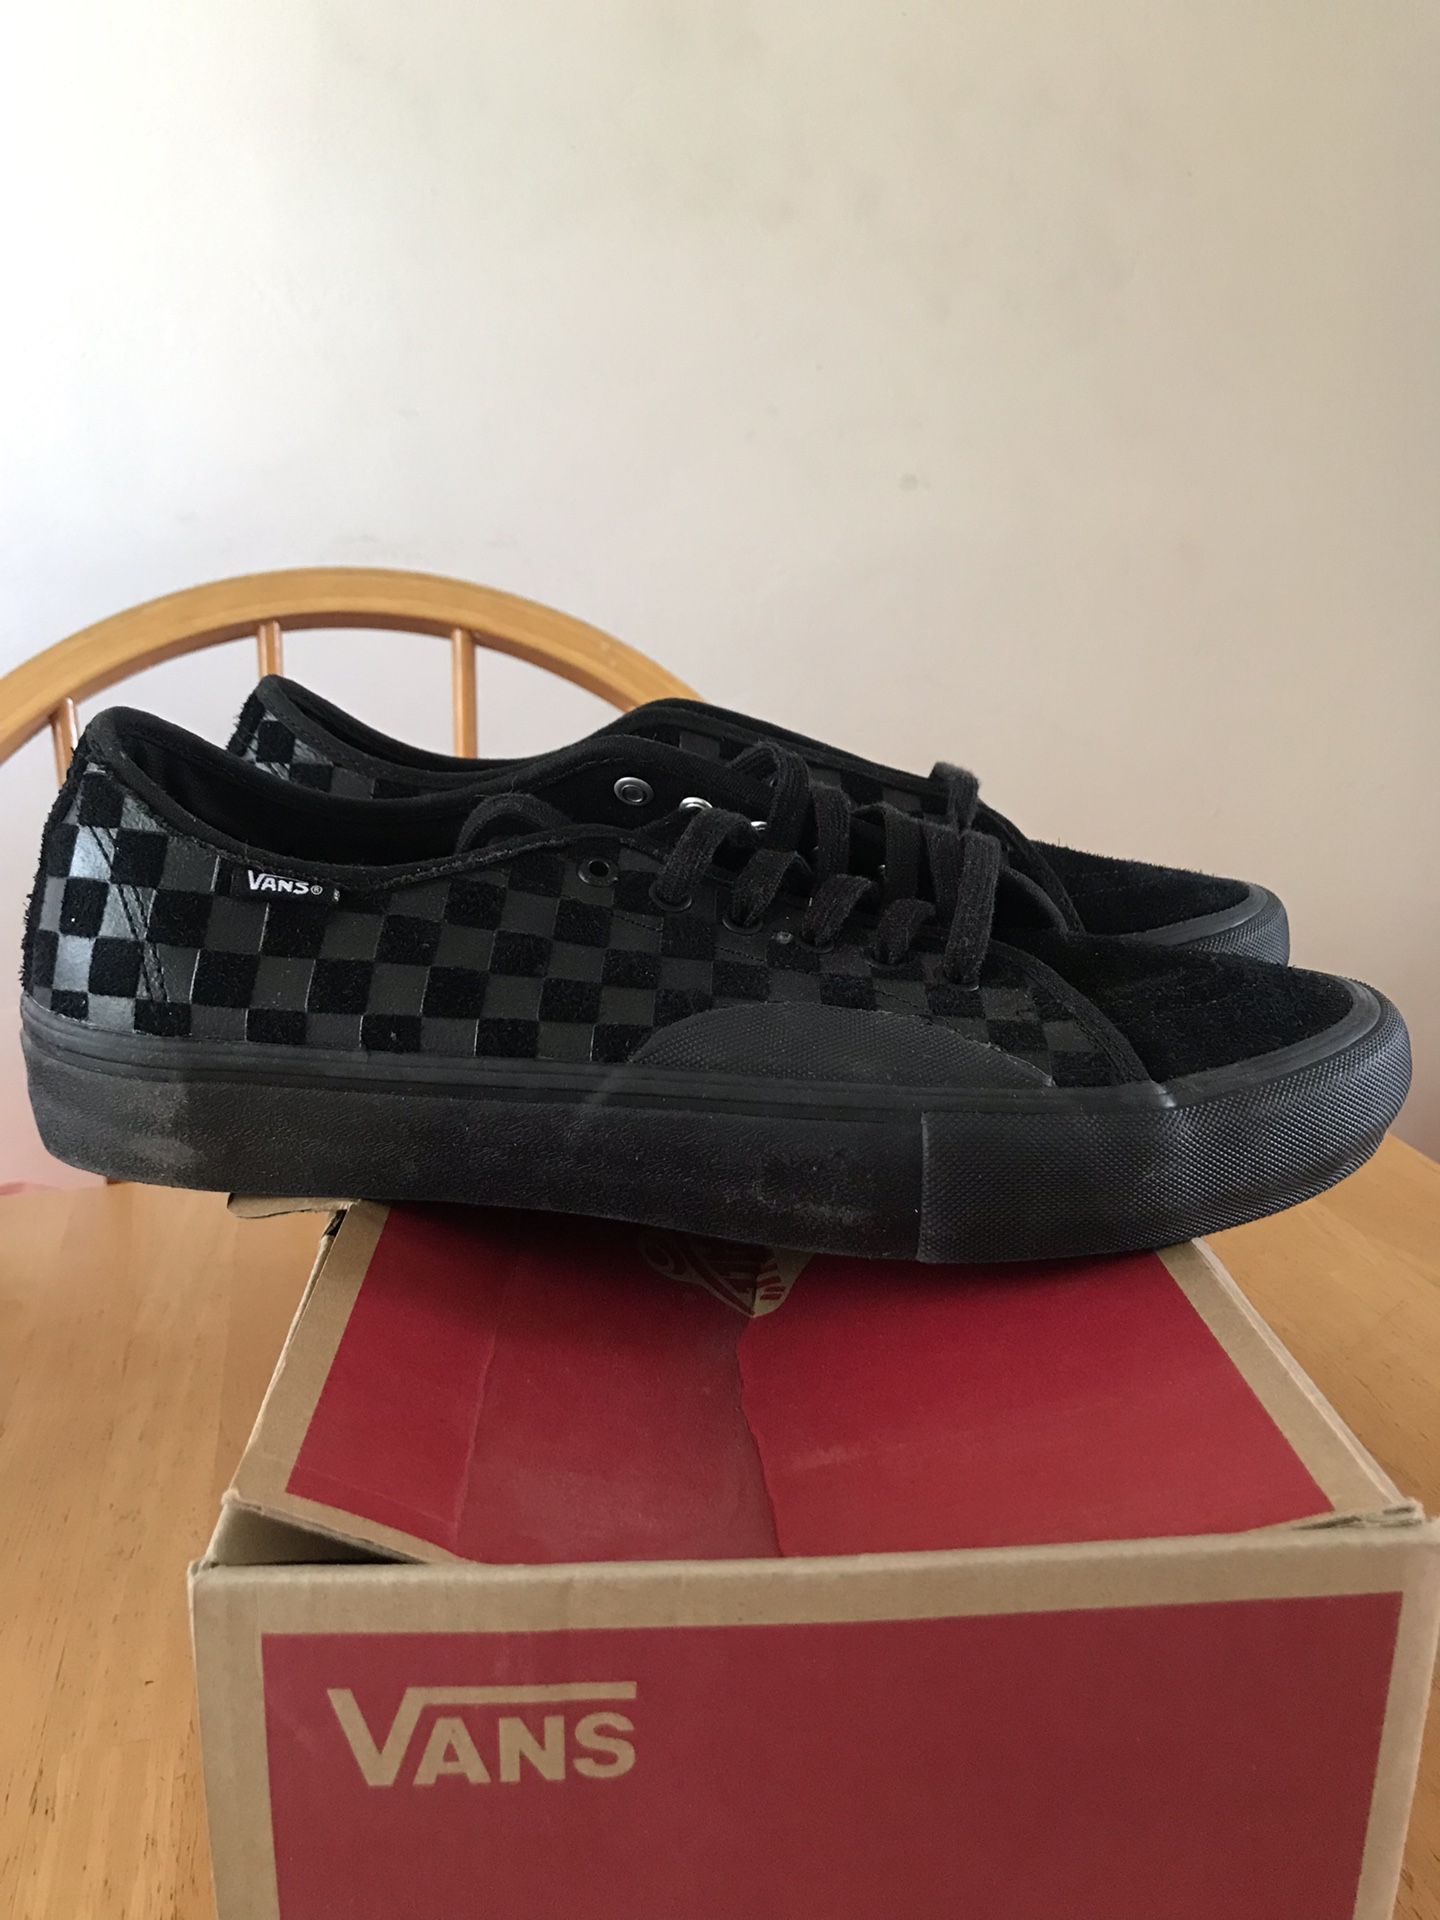 Brand new vans AV classic pro hairy suede black skate skateboard shoes men’s size 13